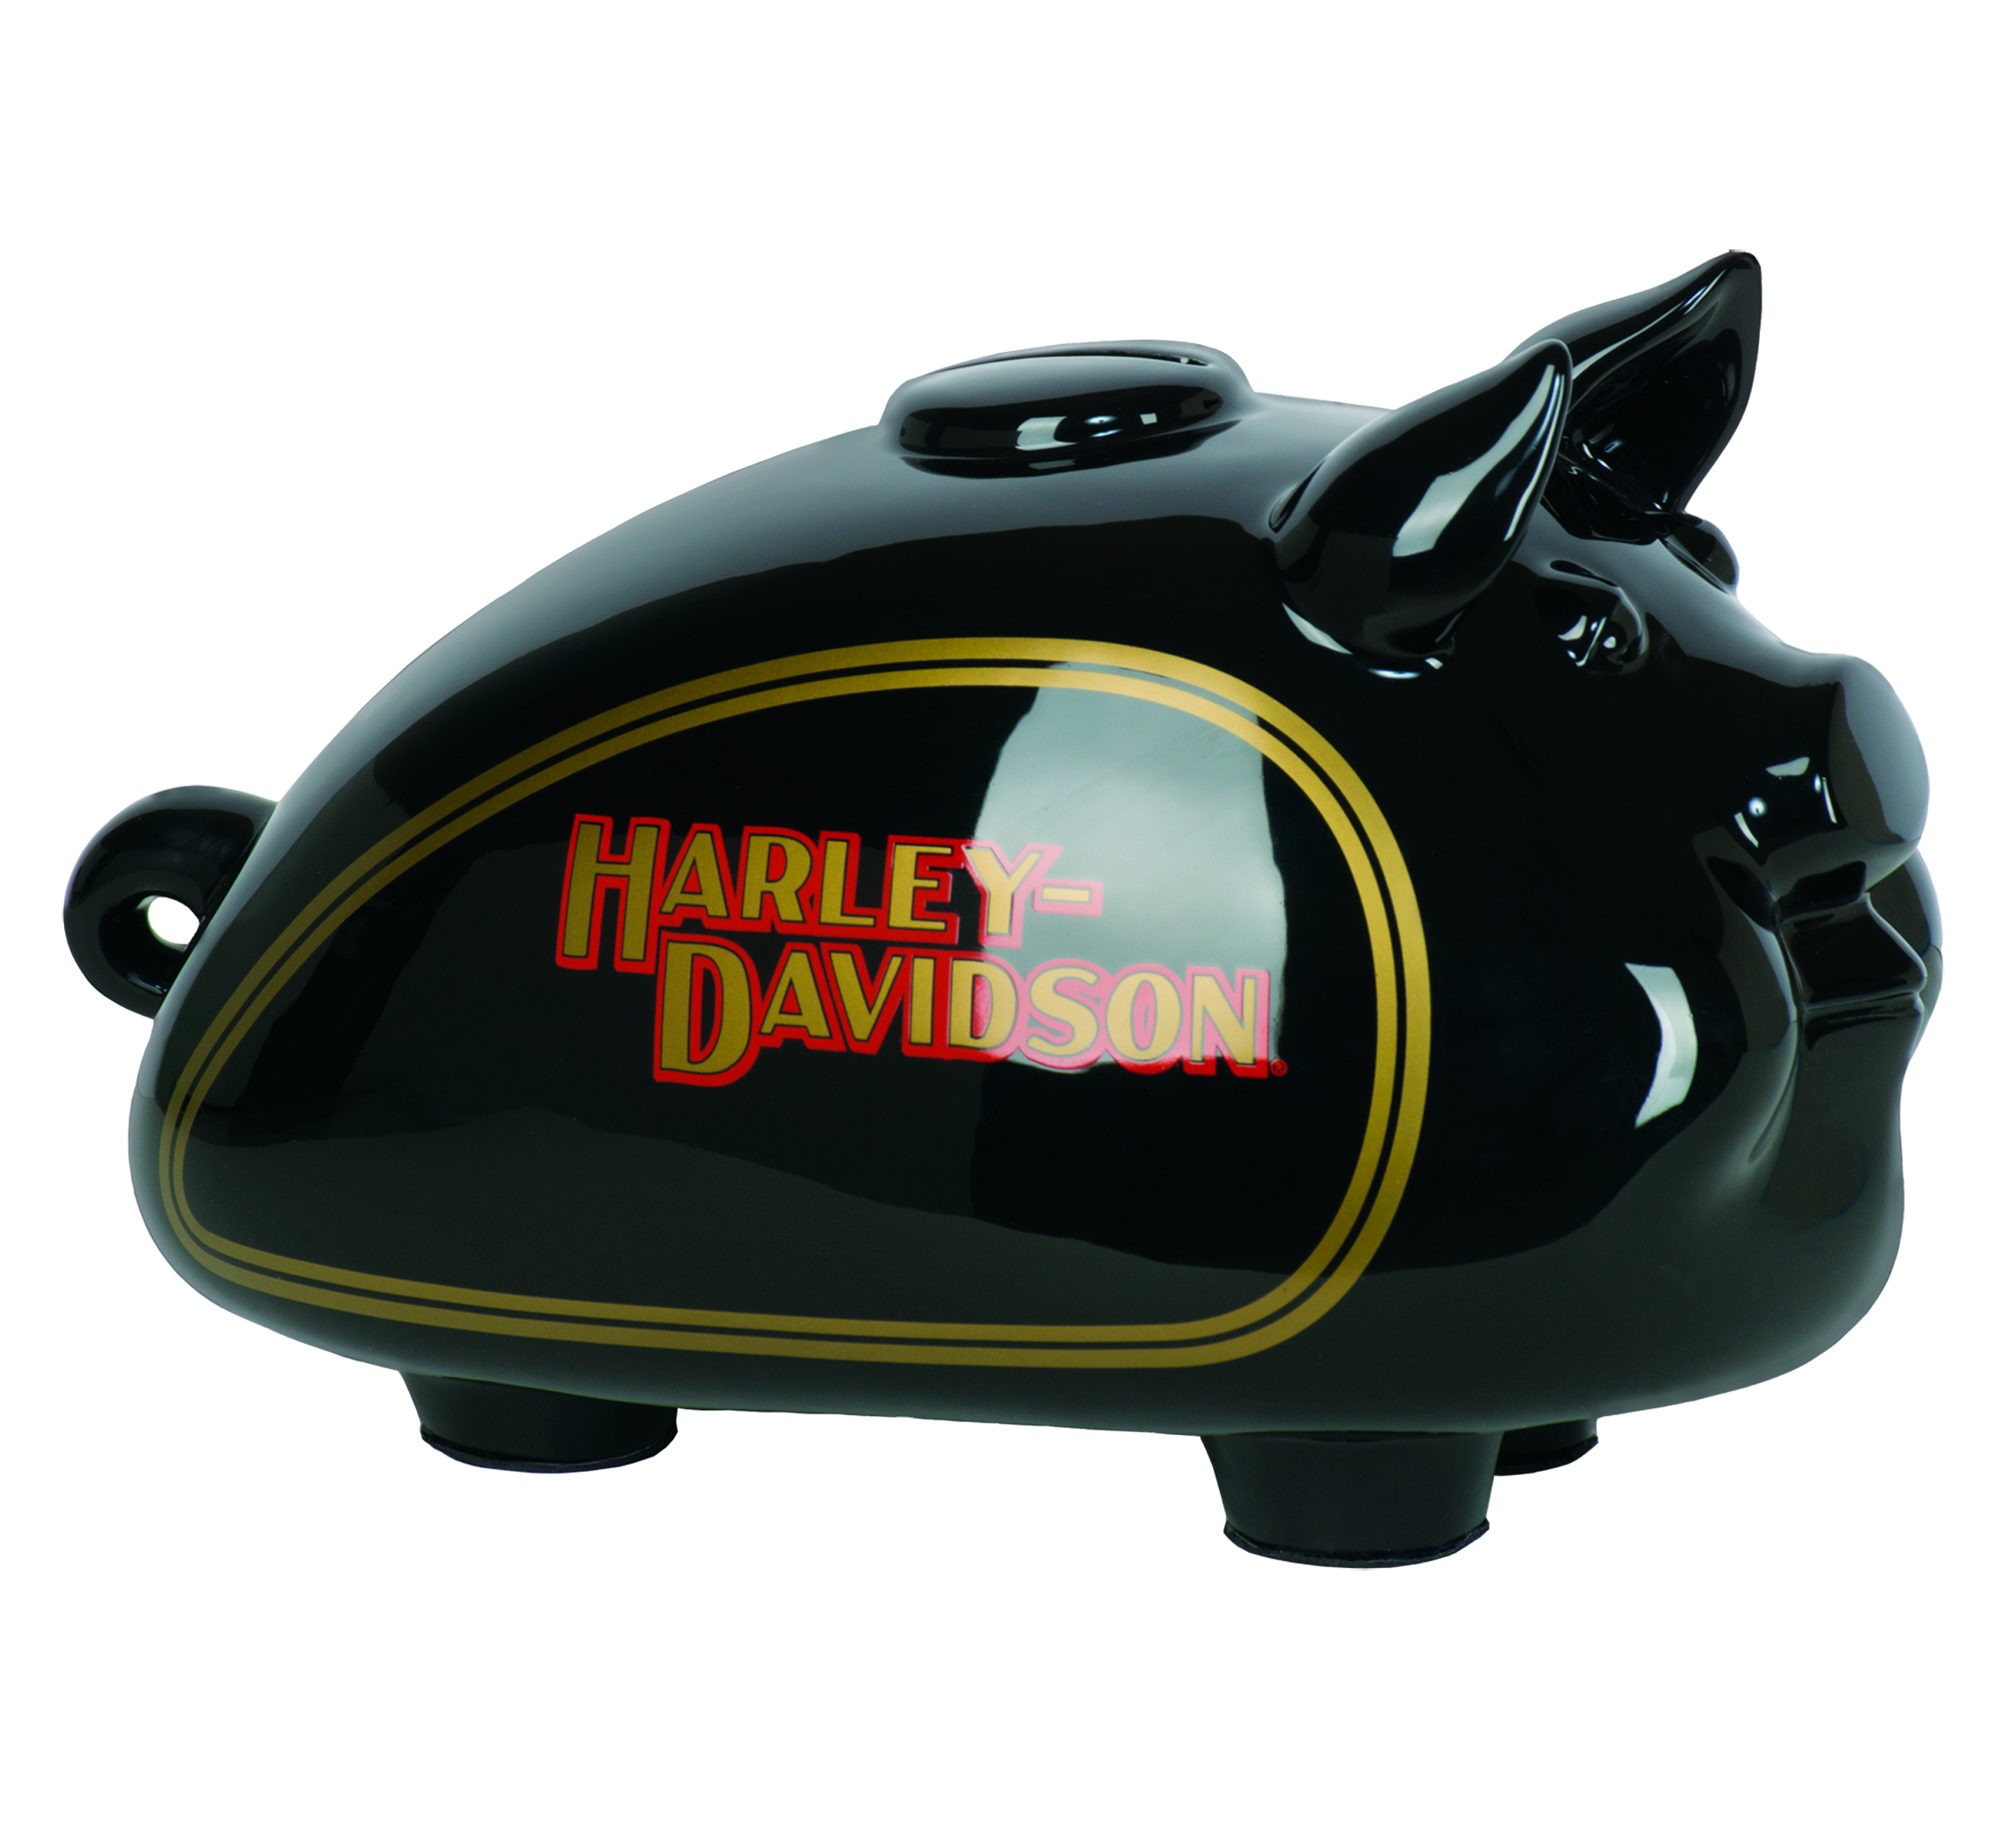 Harley Davidson Piggy Bank - KibrisPDR